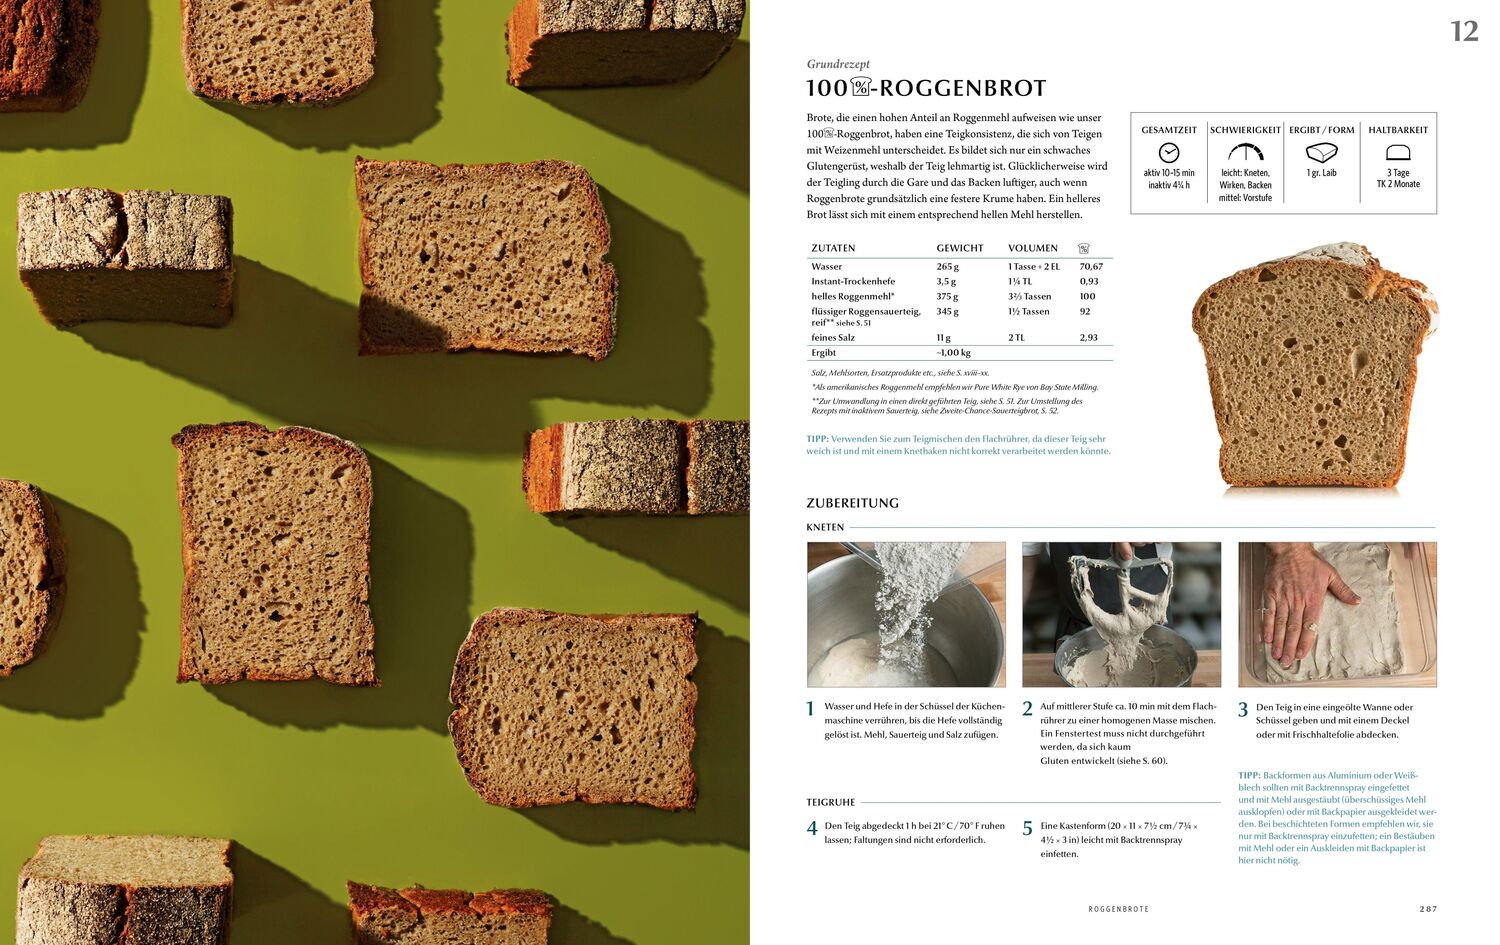 Bild: 9798988713104 | Modernist Bread at Home | Deutsche Ausgabe | Nathan Myhrvold (u. a.)